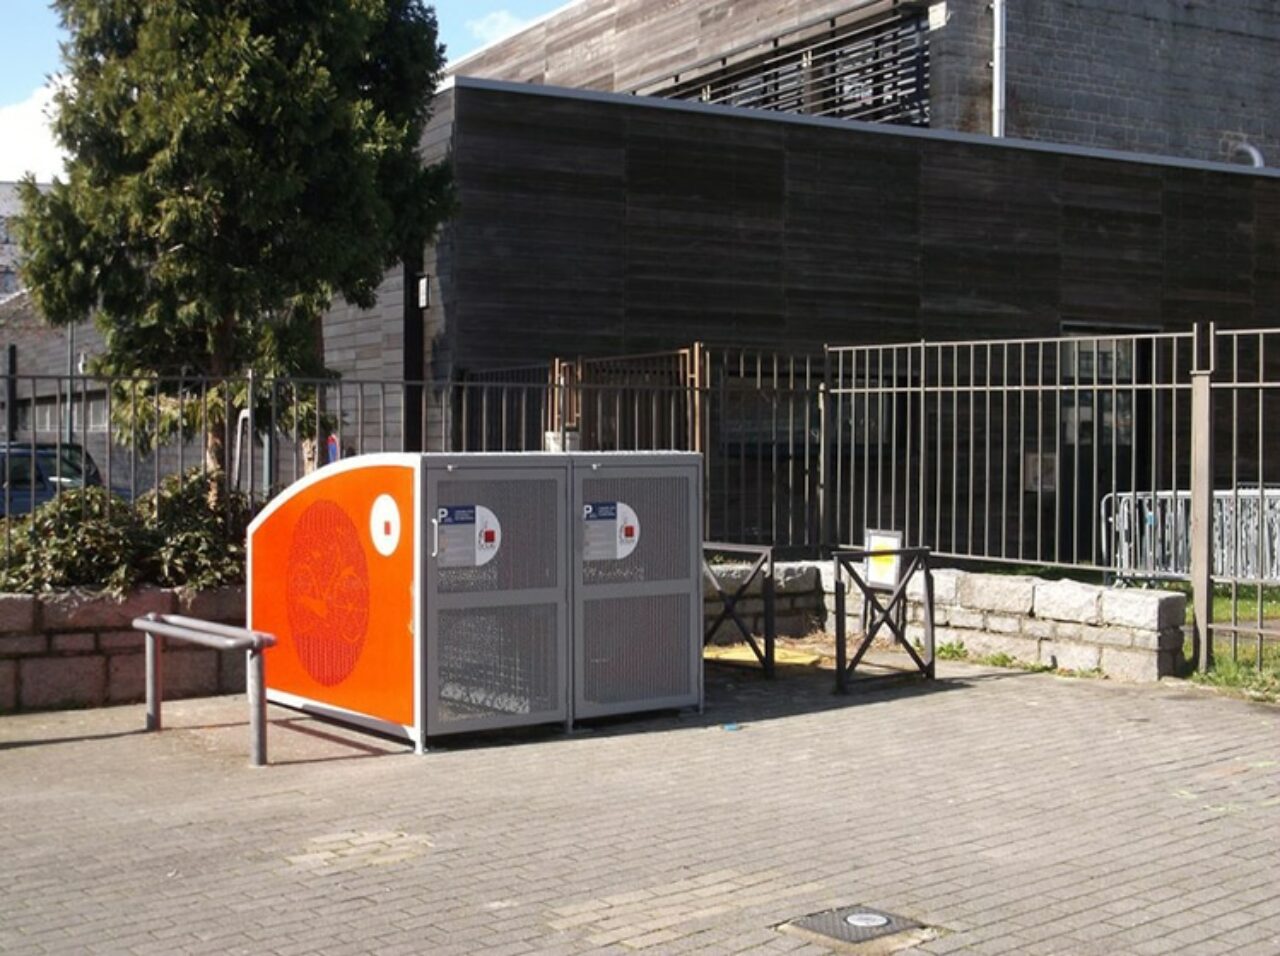 Consignes pour les vélos - Modèle Vel Box d'Abri Plus - Maison des associations - Douai (59)